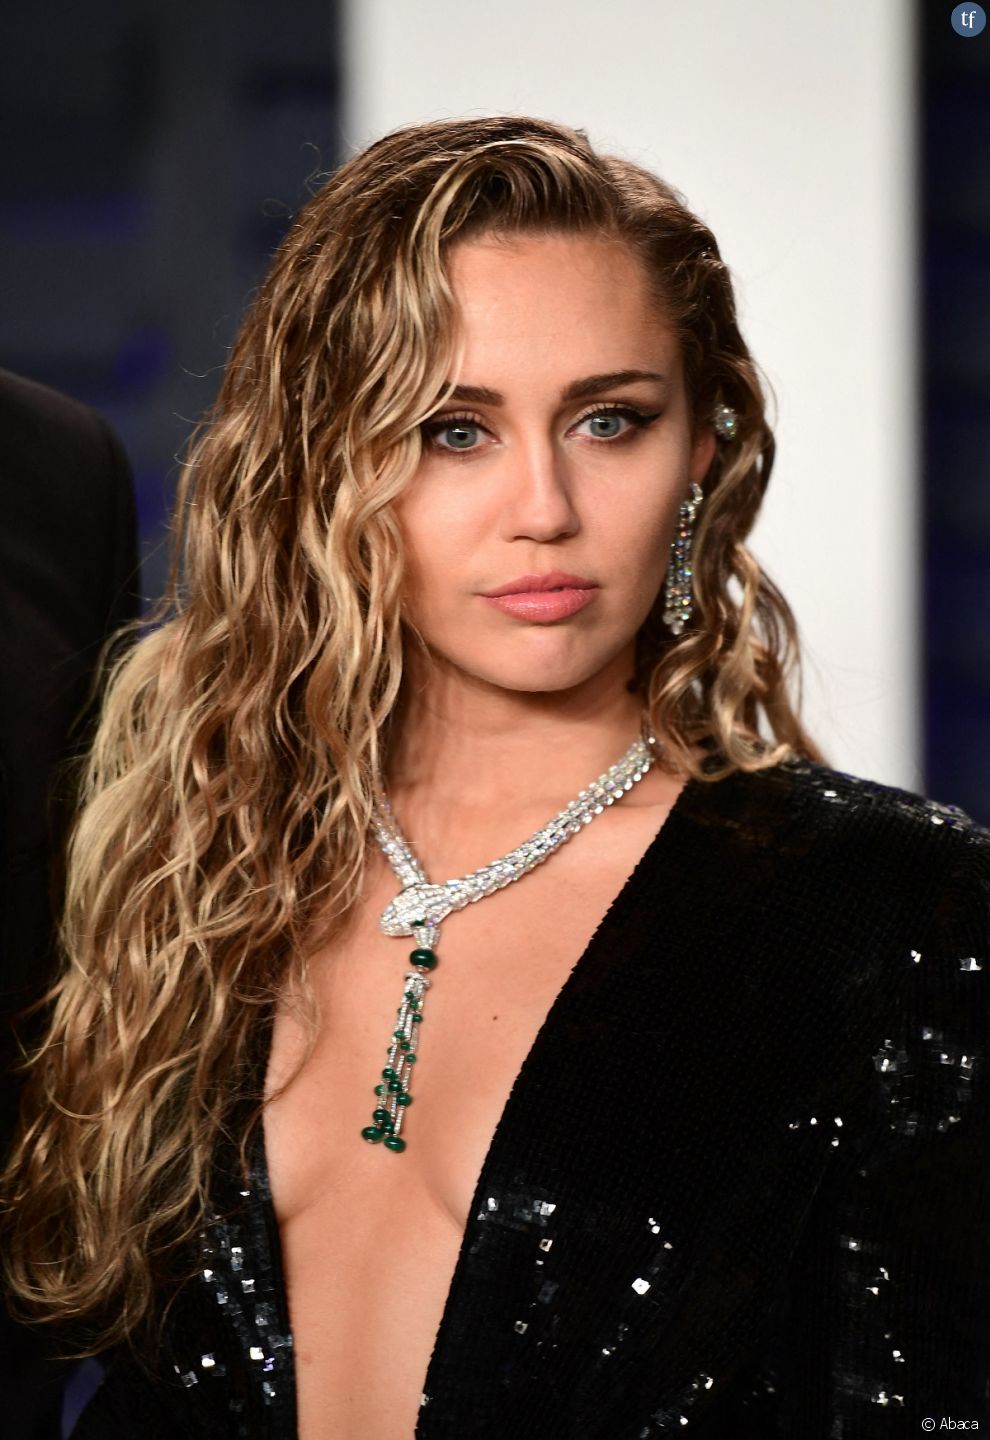 La phénoménale chanson &quot;Flowers&quot; affole le compteur YouTube (89 millions de vues déjà) et ravit les fans de Miley Cyrus. Mais ce hit séduit aussi un public féminin plus large. Notamment pour son discours.